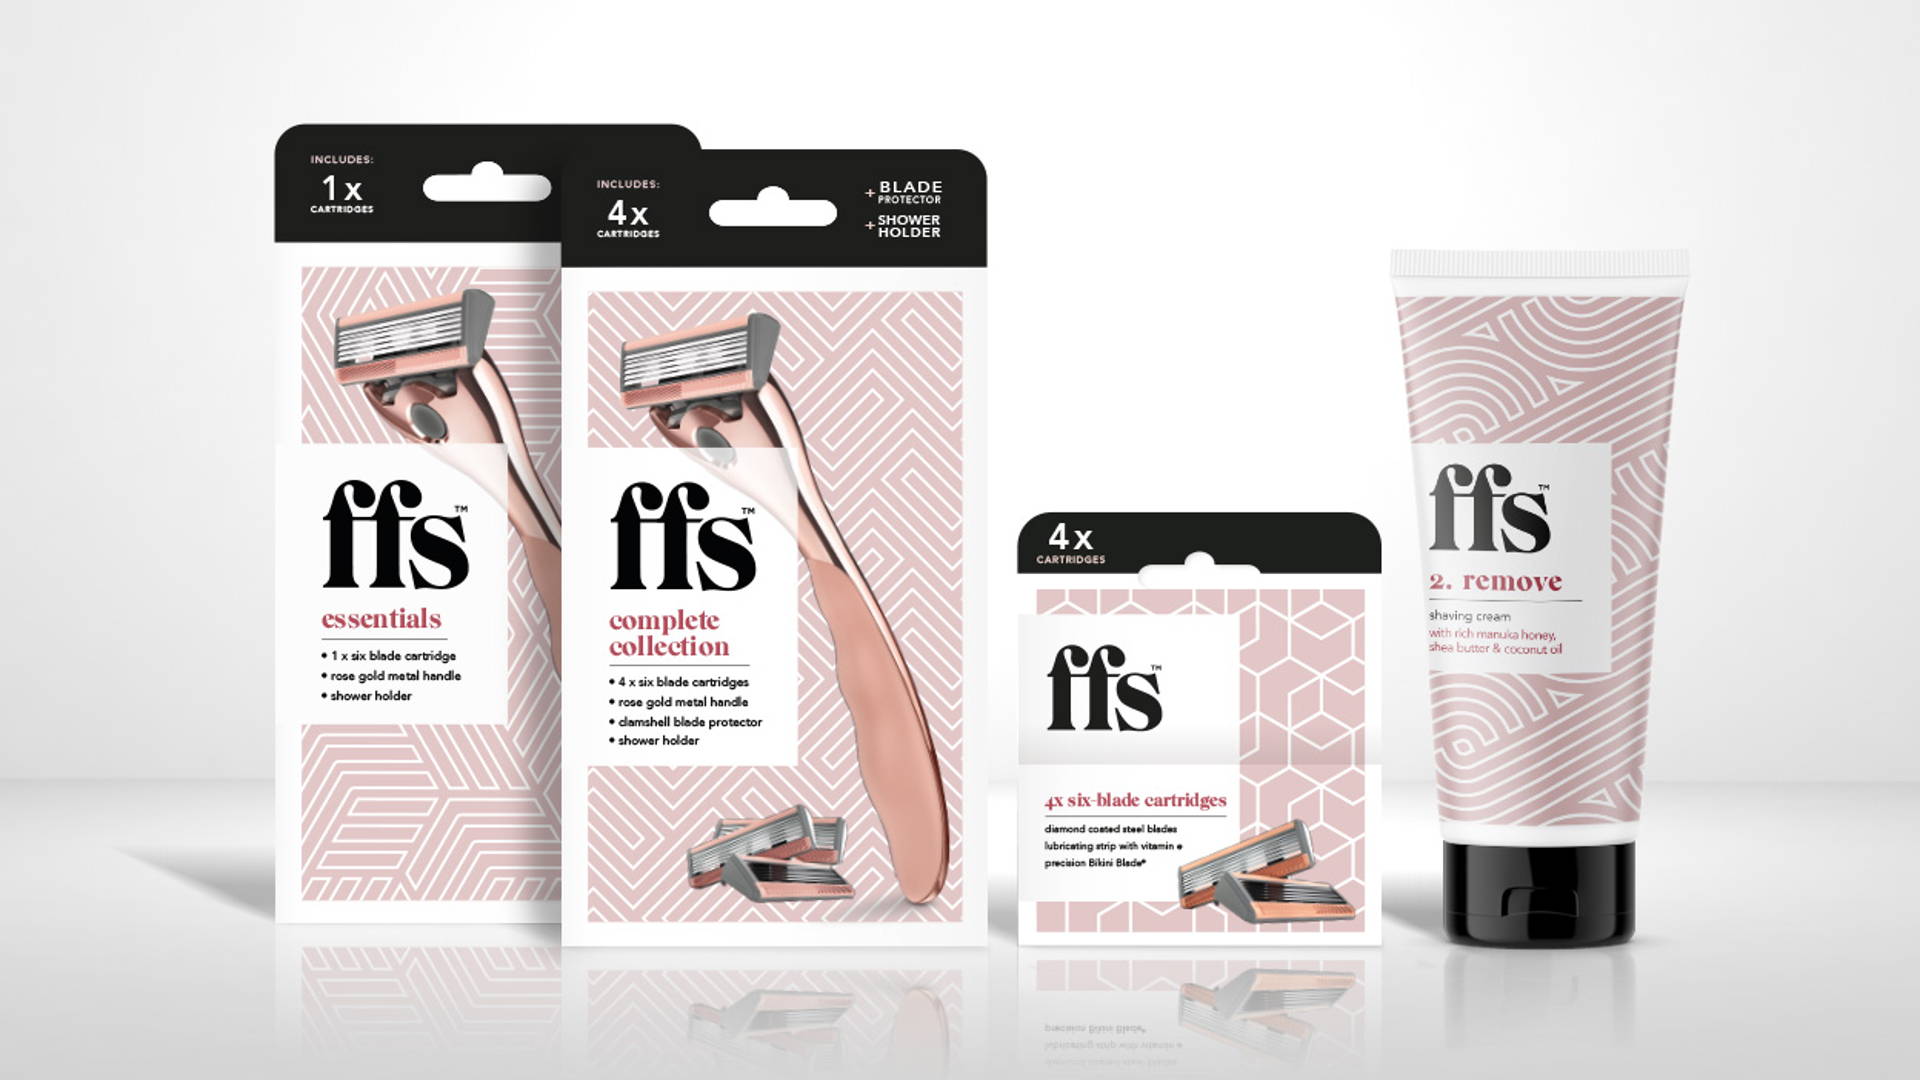 英国FFS女士剃毛刀品牌包装设计，传达“美丽应该轻松”的品牌精神